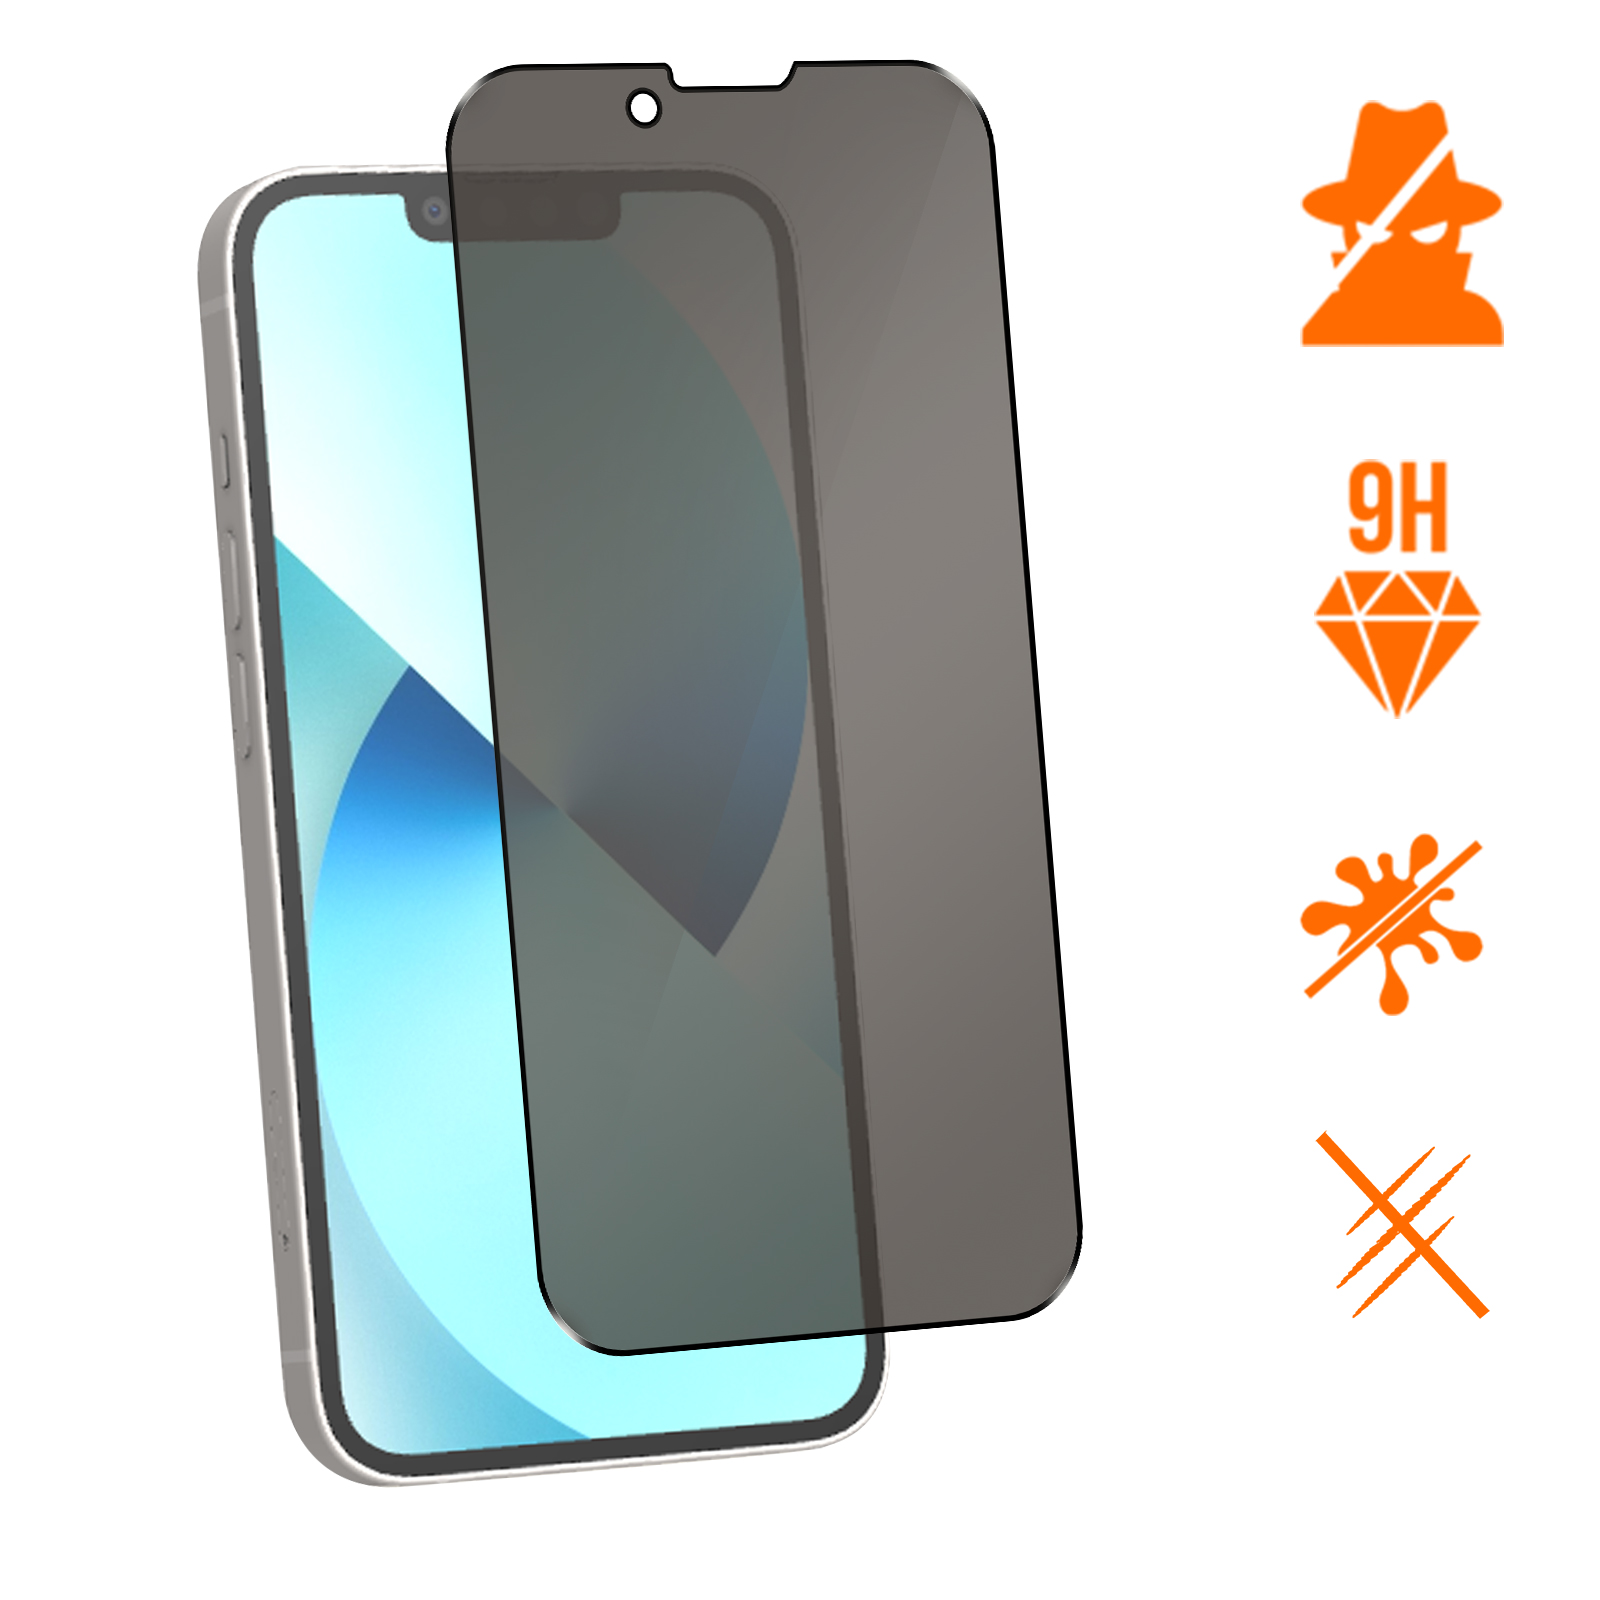 Pour iPhone 13 mini 4PCS-Protecteur d'écran anti-espion pour iPhone, film  de protection de la vie privée, ve